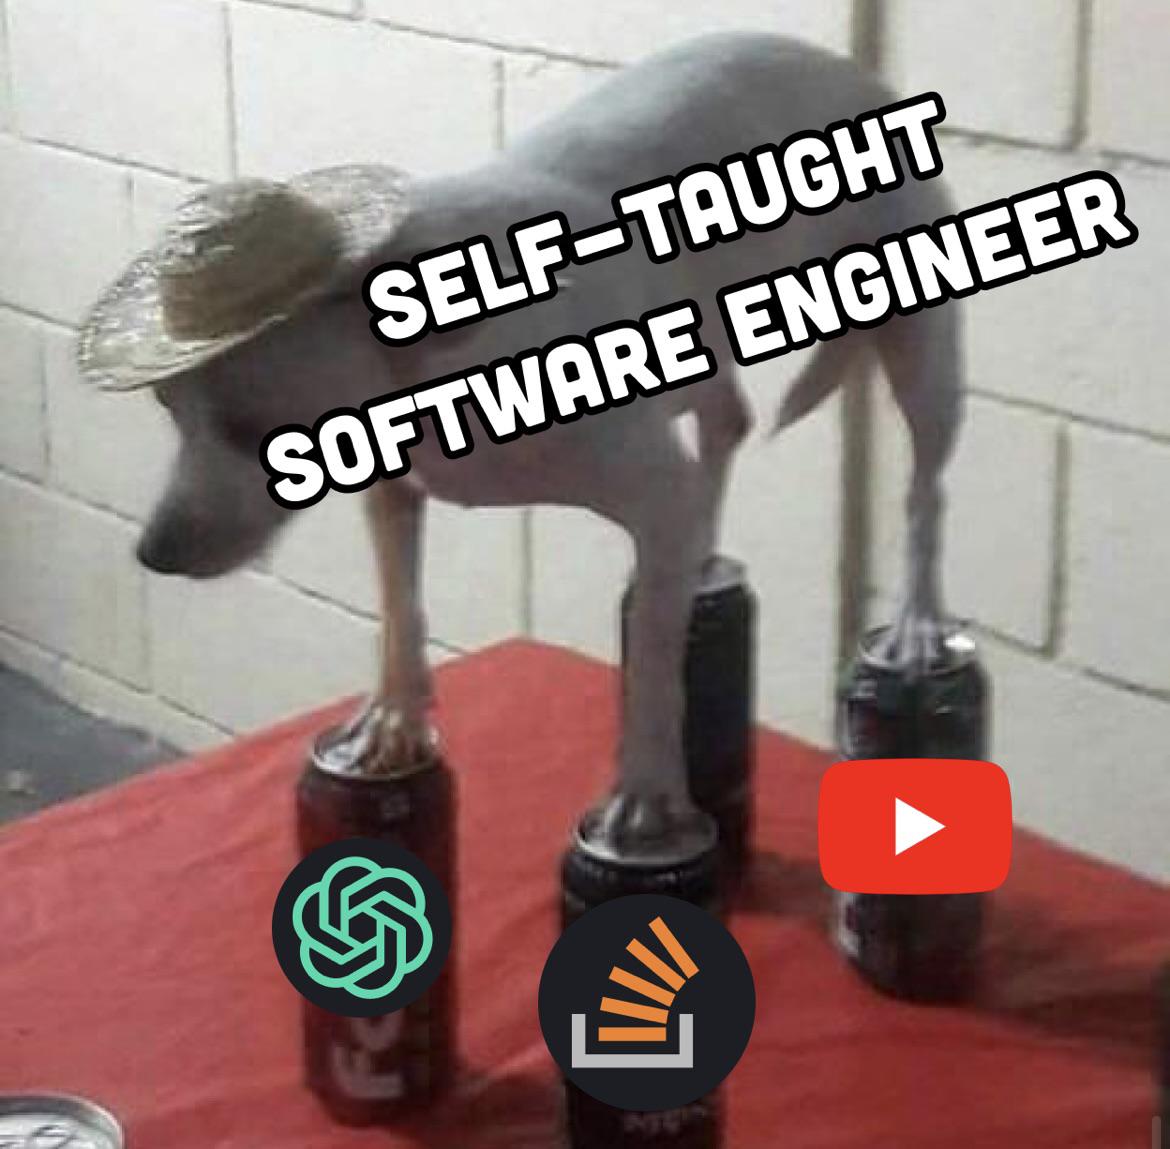 r/ProgrammerHumor - selfTaughtSoftwareEngineer